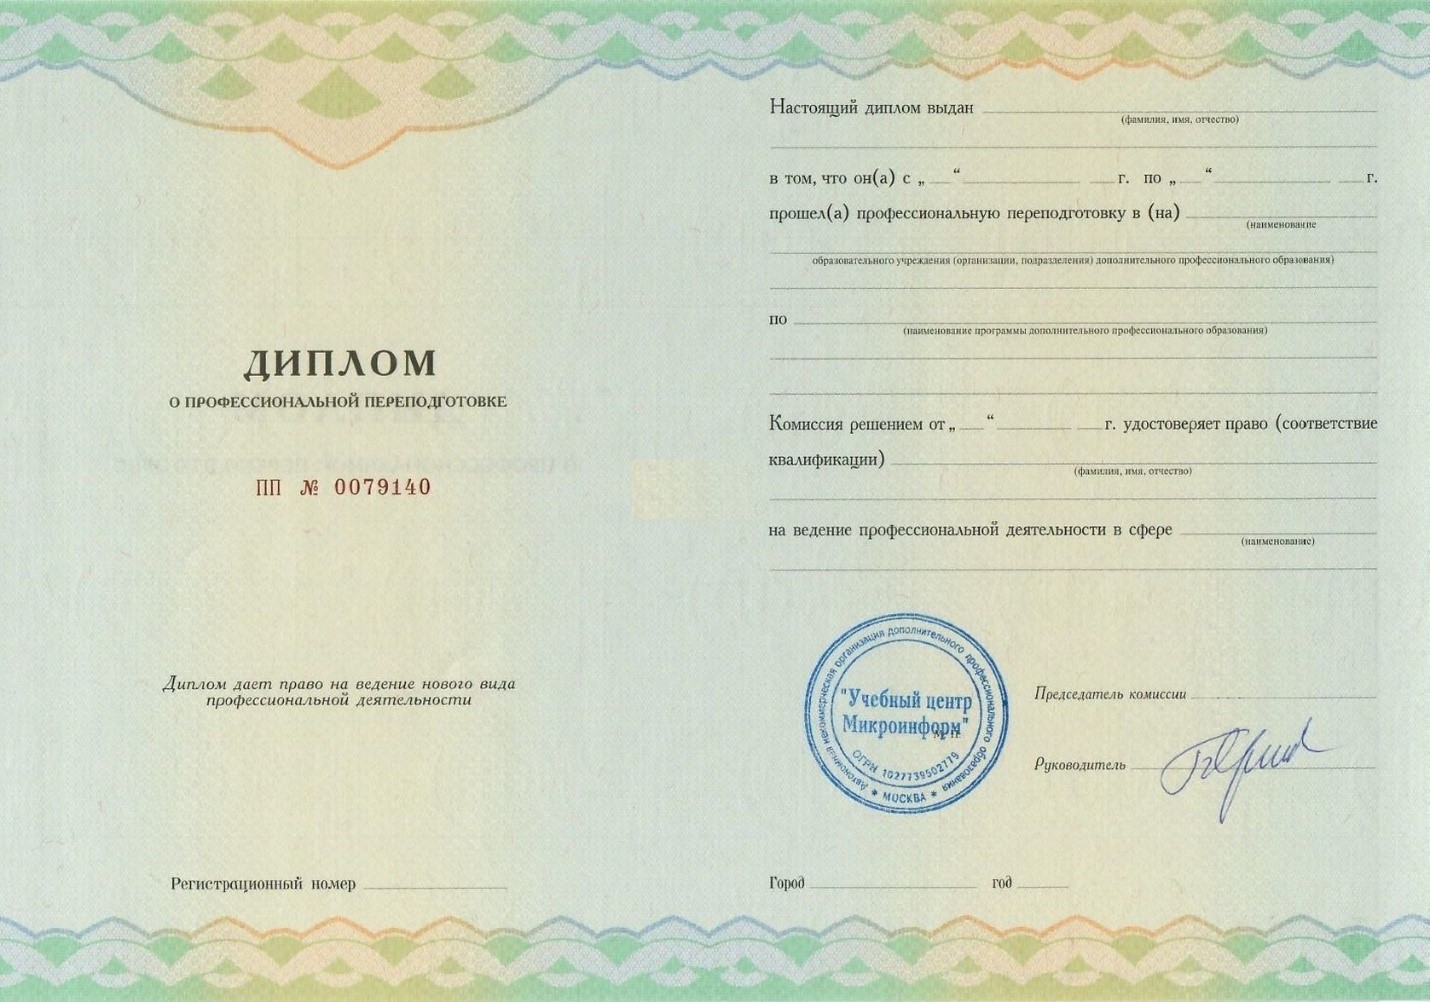 Микроинформ - Диплом повышения квалификации.